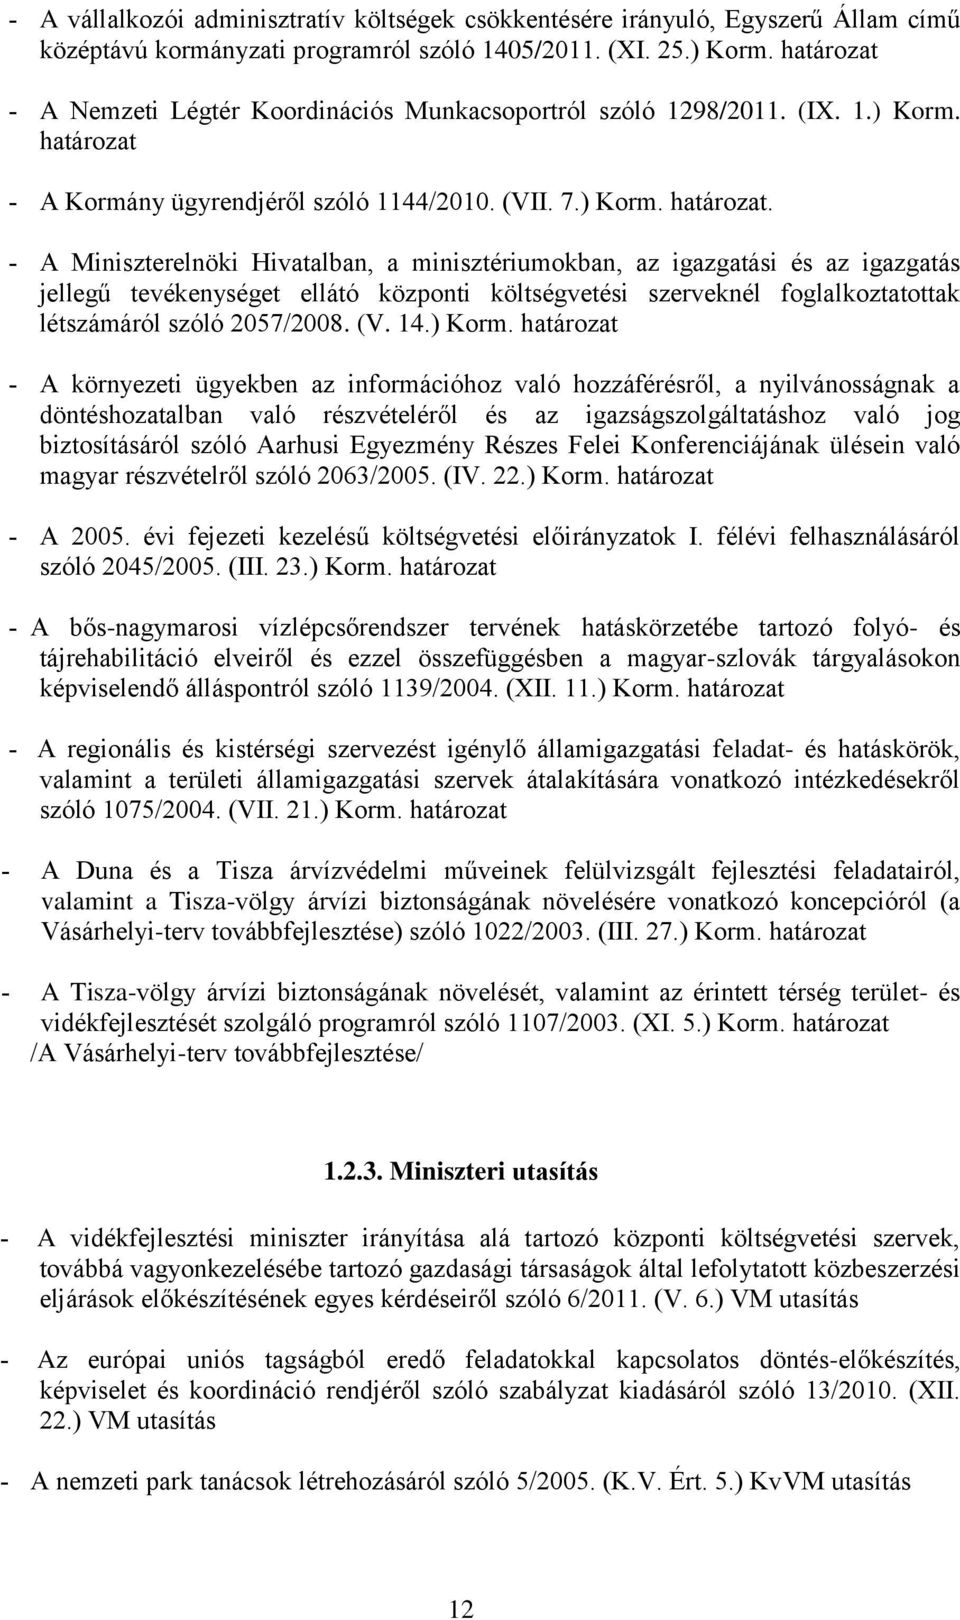 A Kormány ügyrendjéről szóló 1144/2010. (VII. 7.) Korm. határozat.